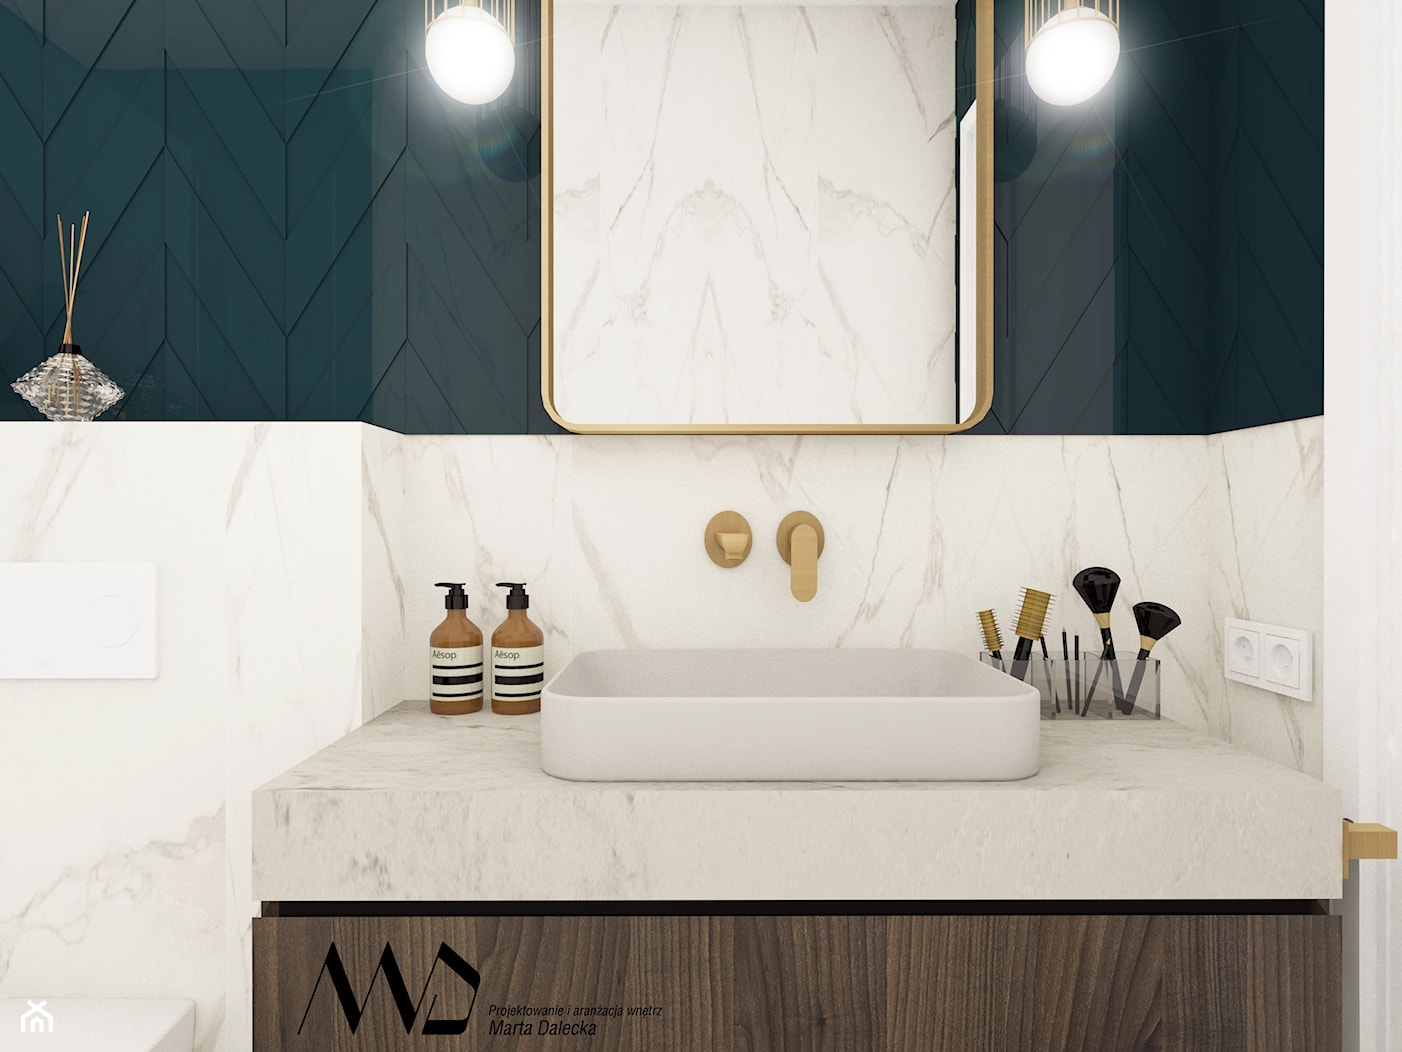 Nowoczesna, elegancka łazienka - zdjęcie od Projektowanie i Aranżacja Wnętrz Marta Dalecka - Homebook